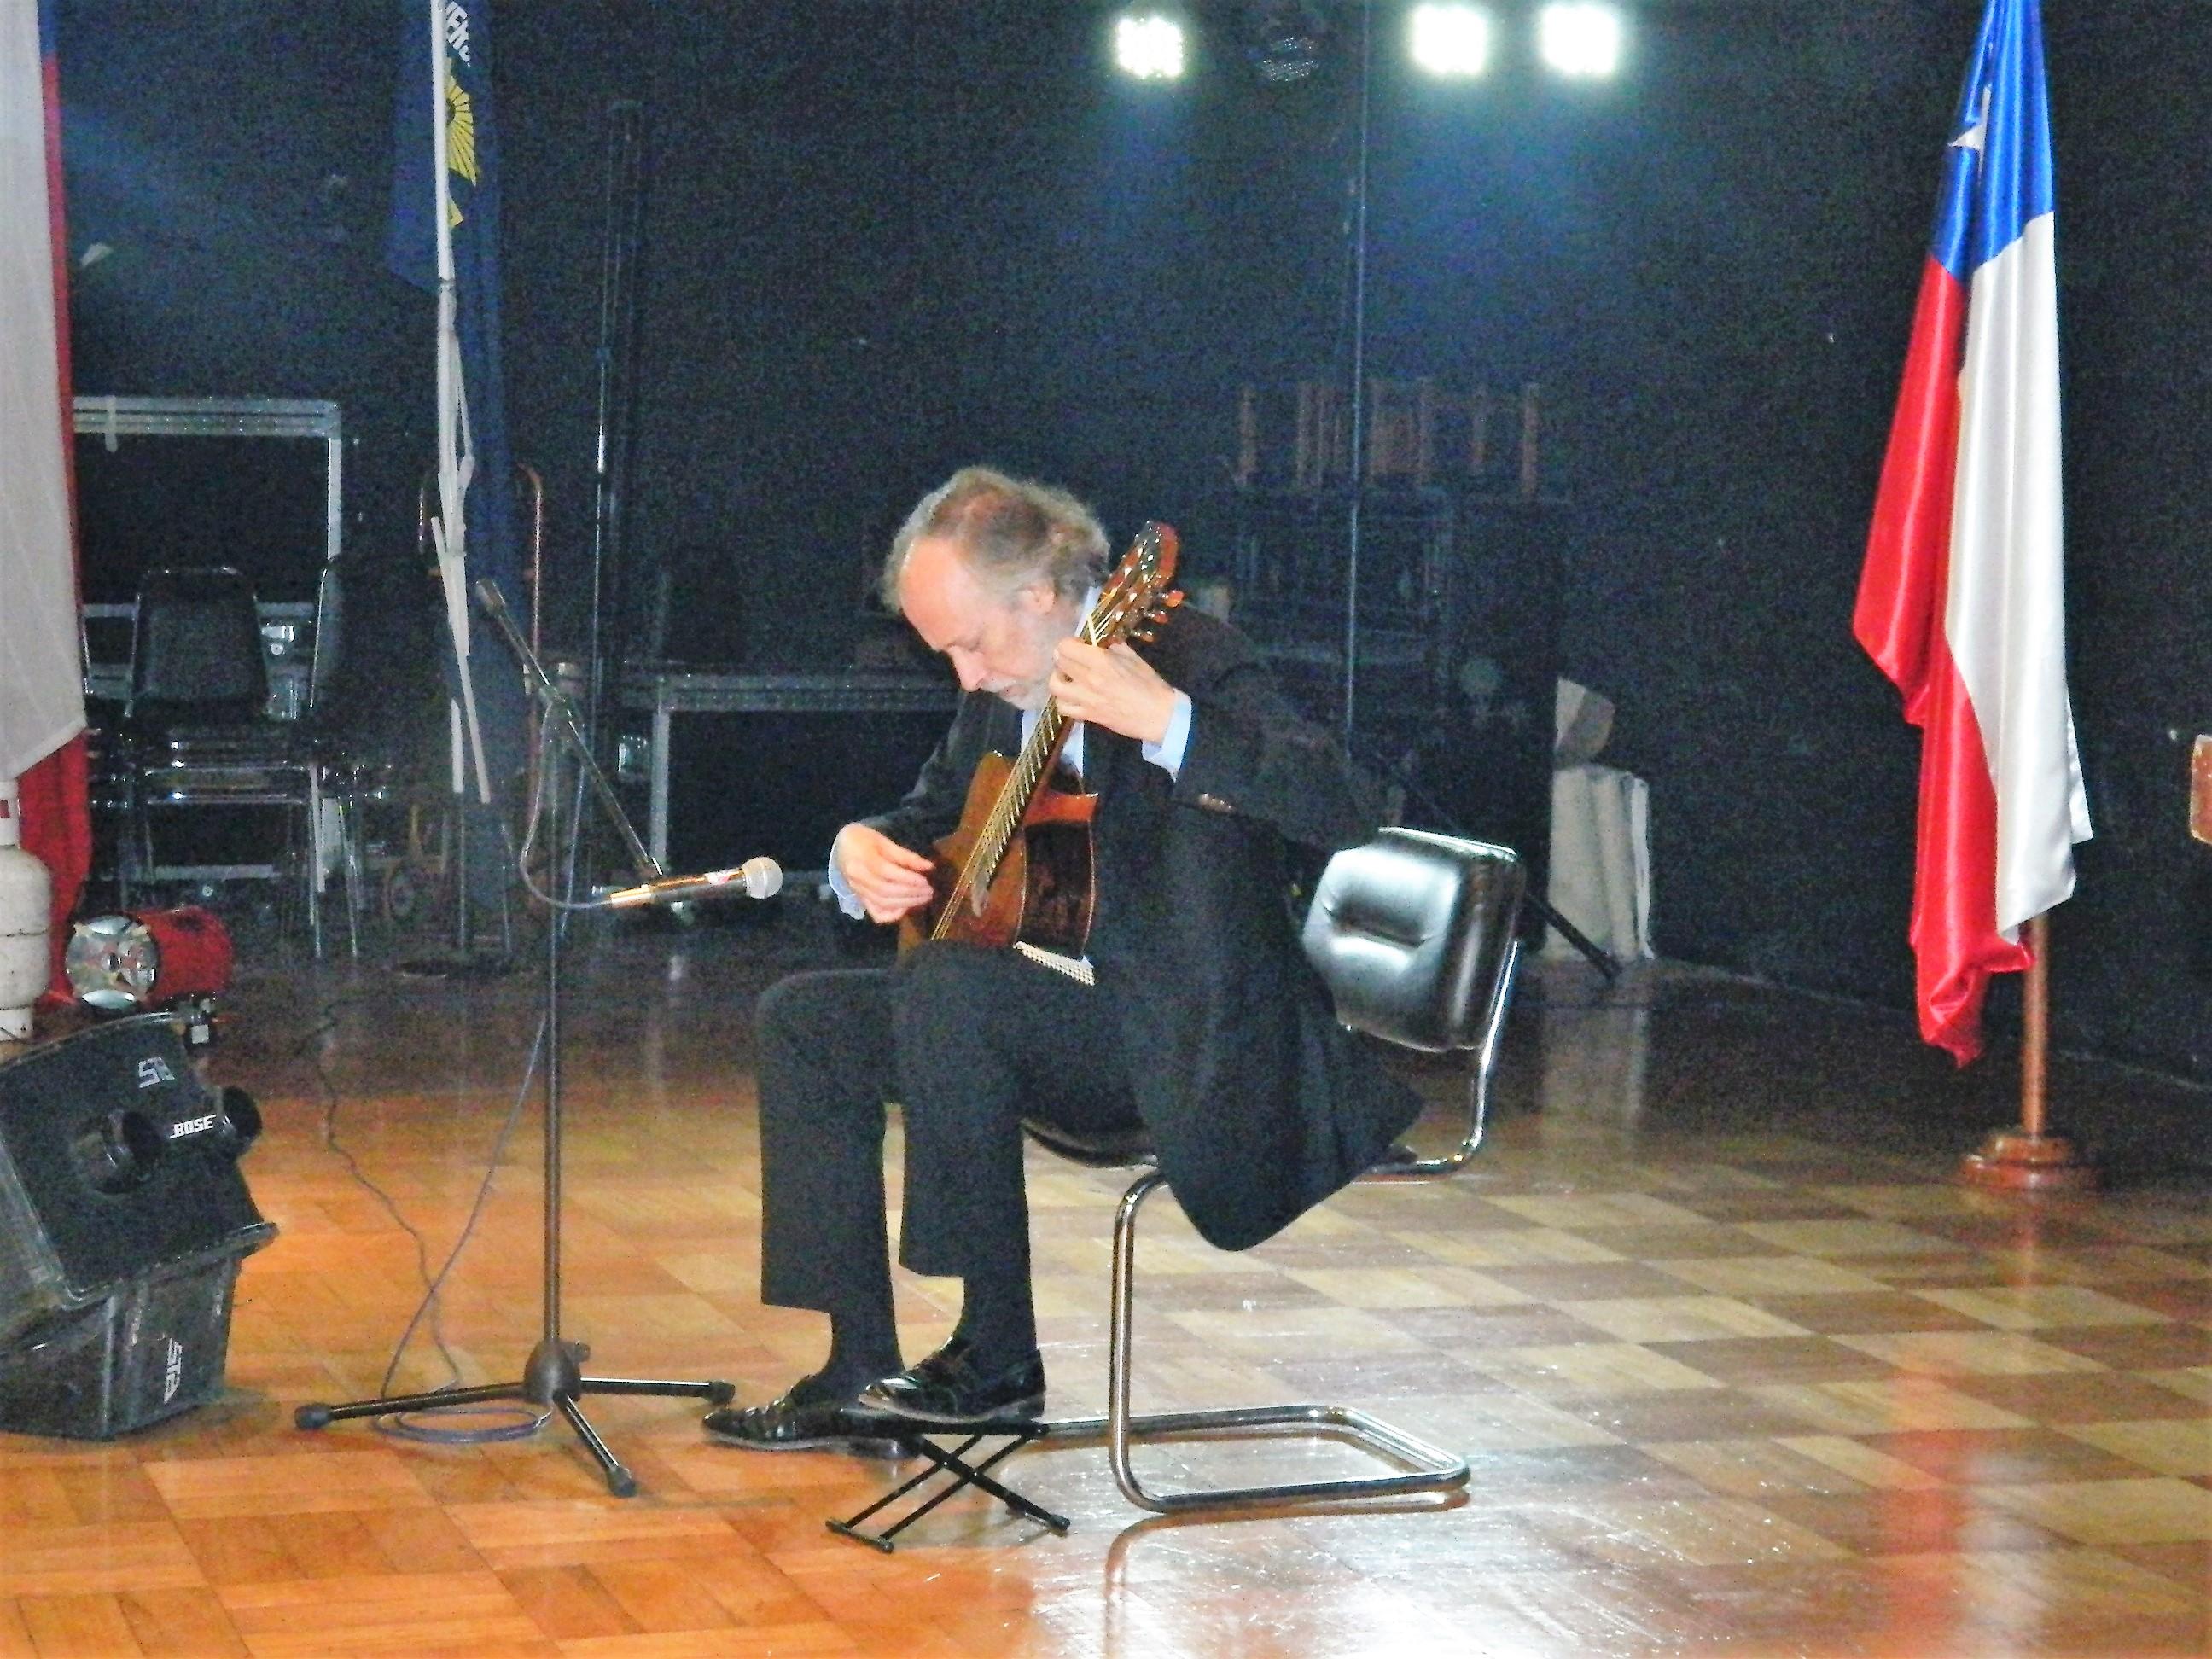 El evento contó con la presentación artística del concertista en guitarra Prof. Luis Orlandini Robert.